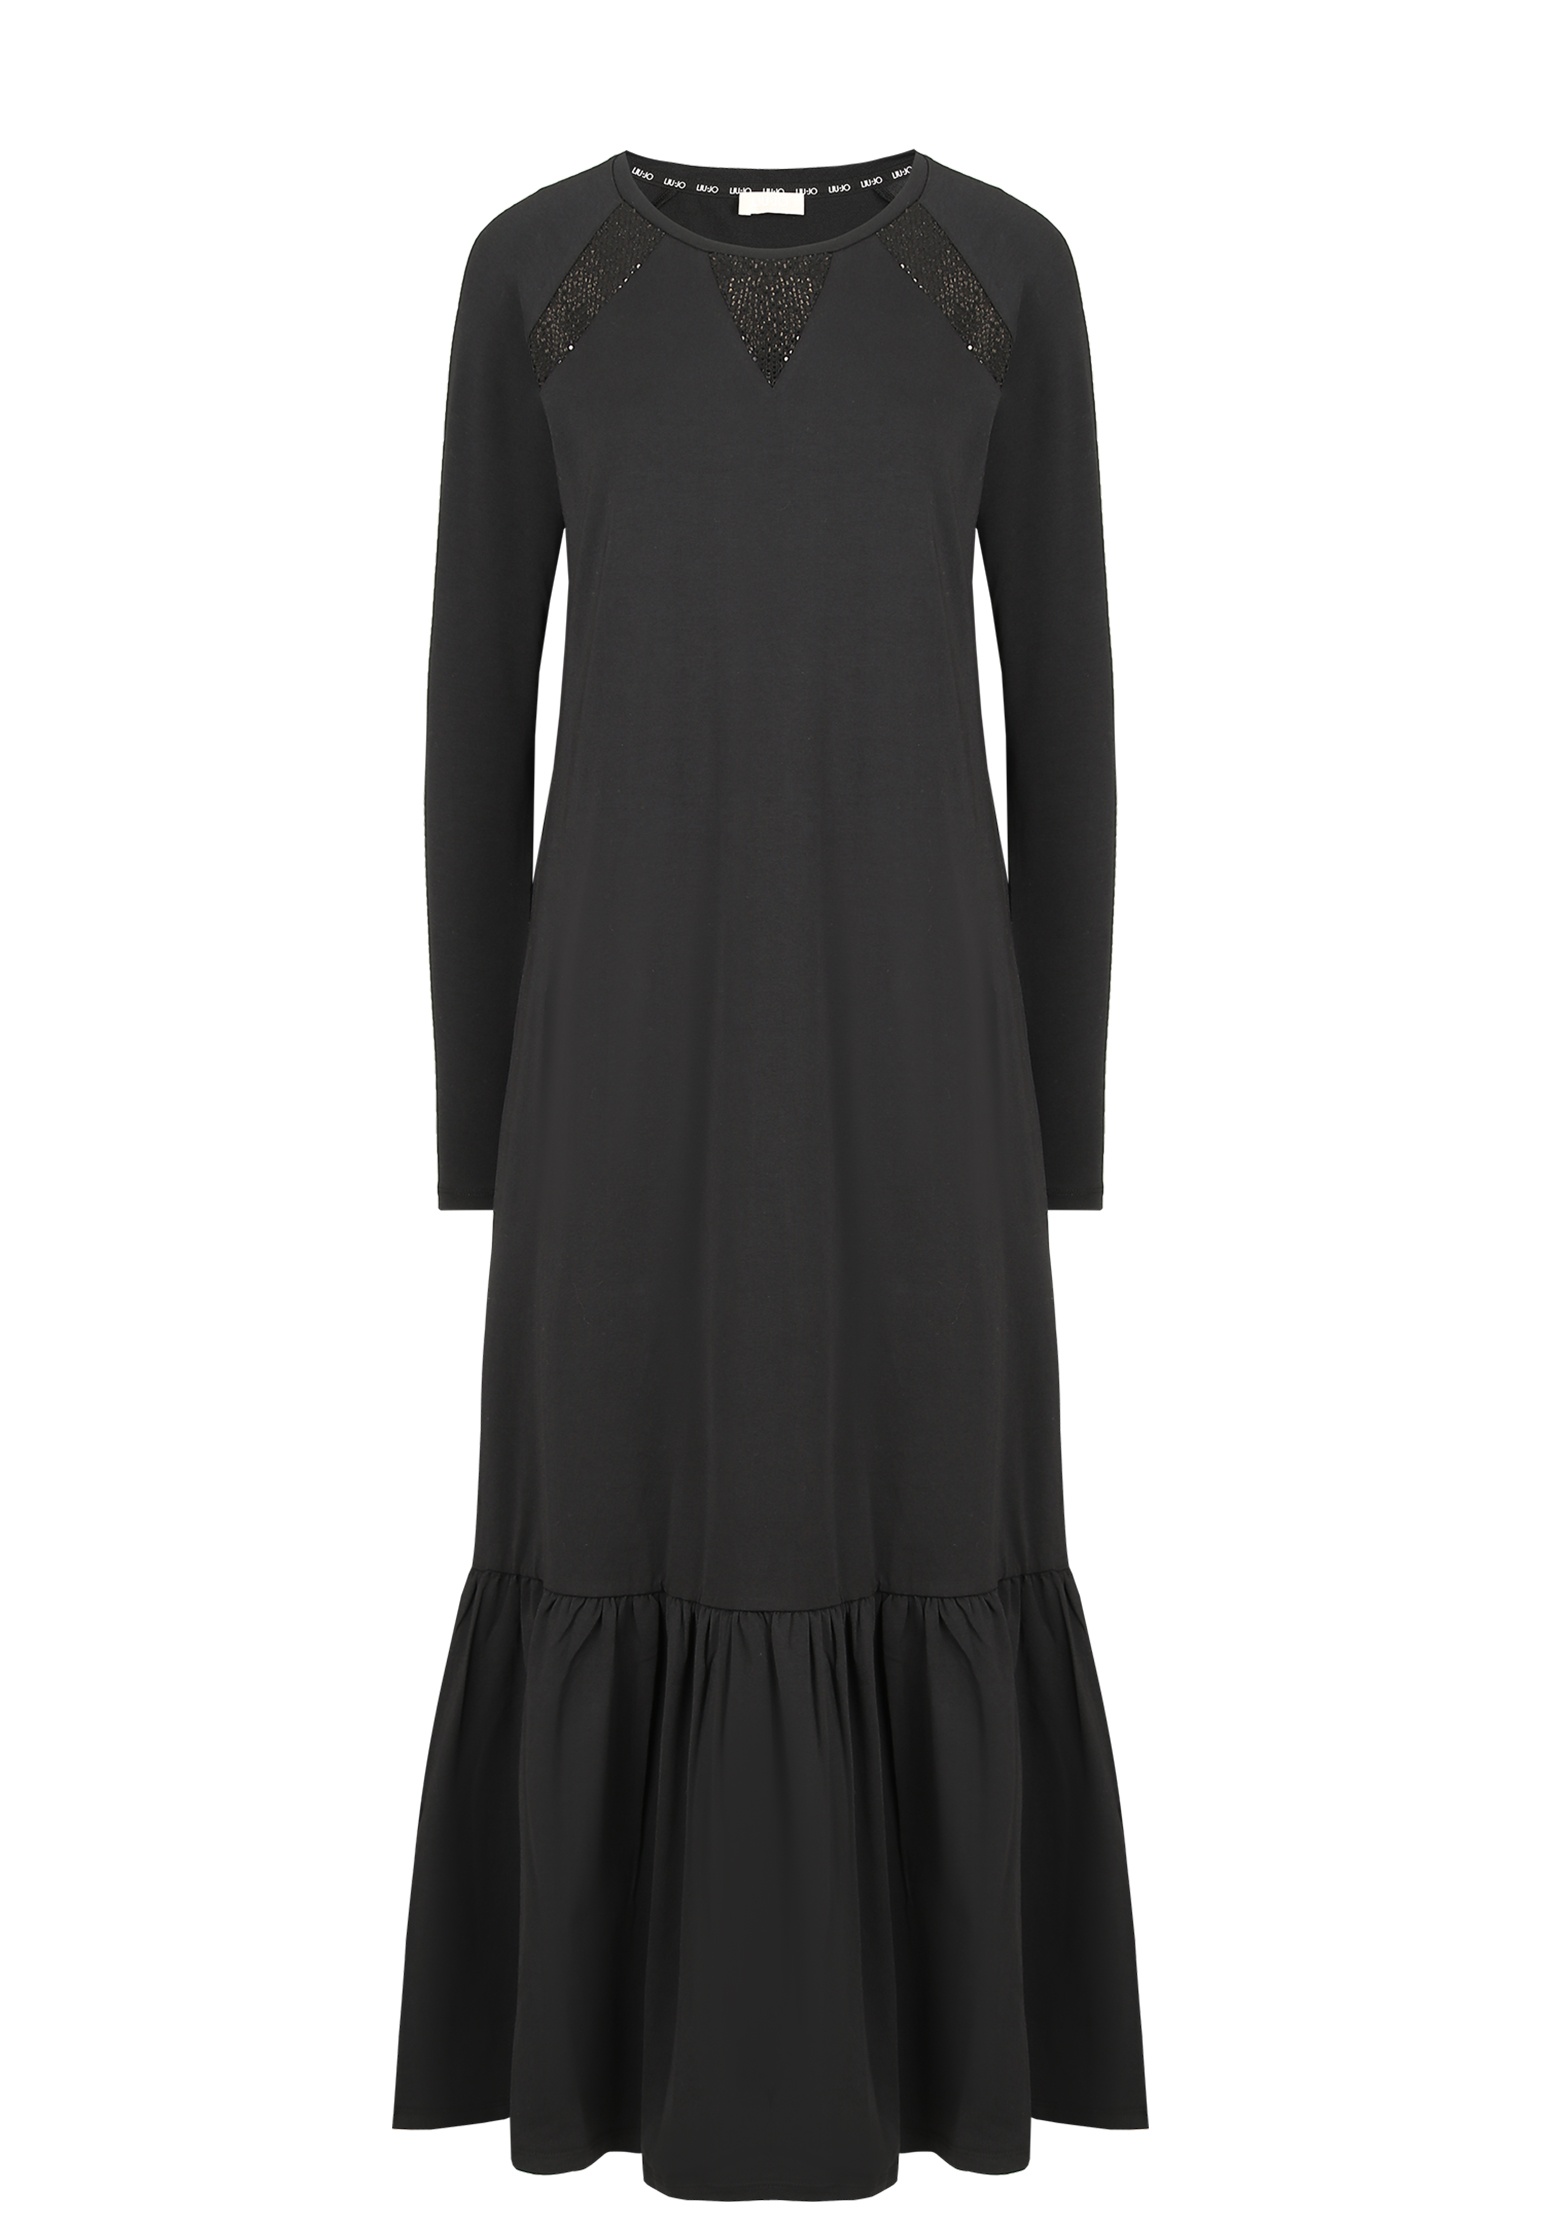 Платье женское Liu Jo 148474 черное S